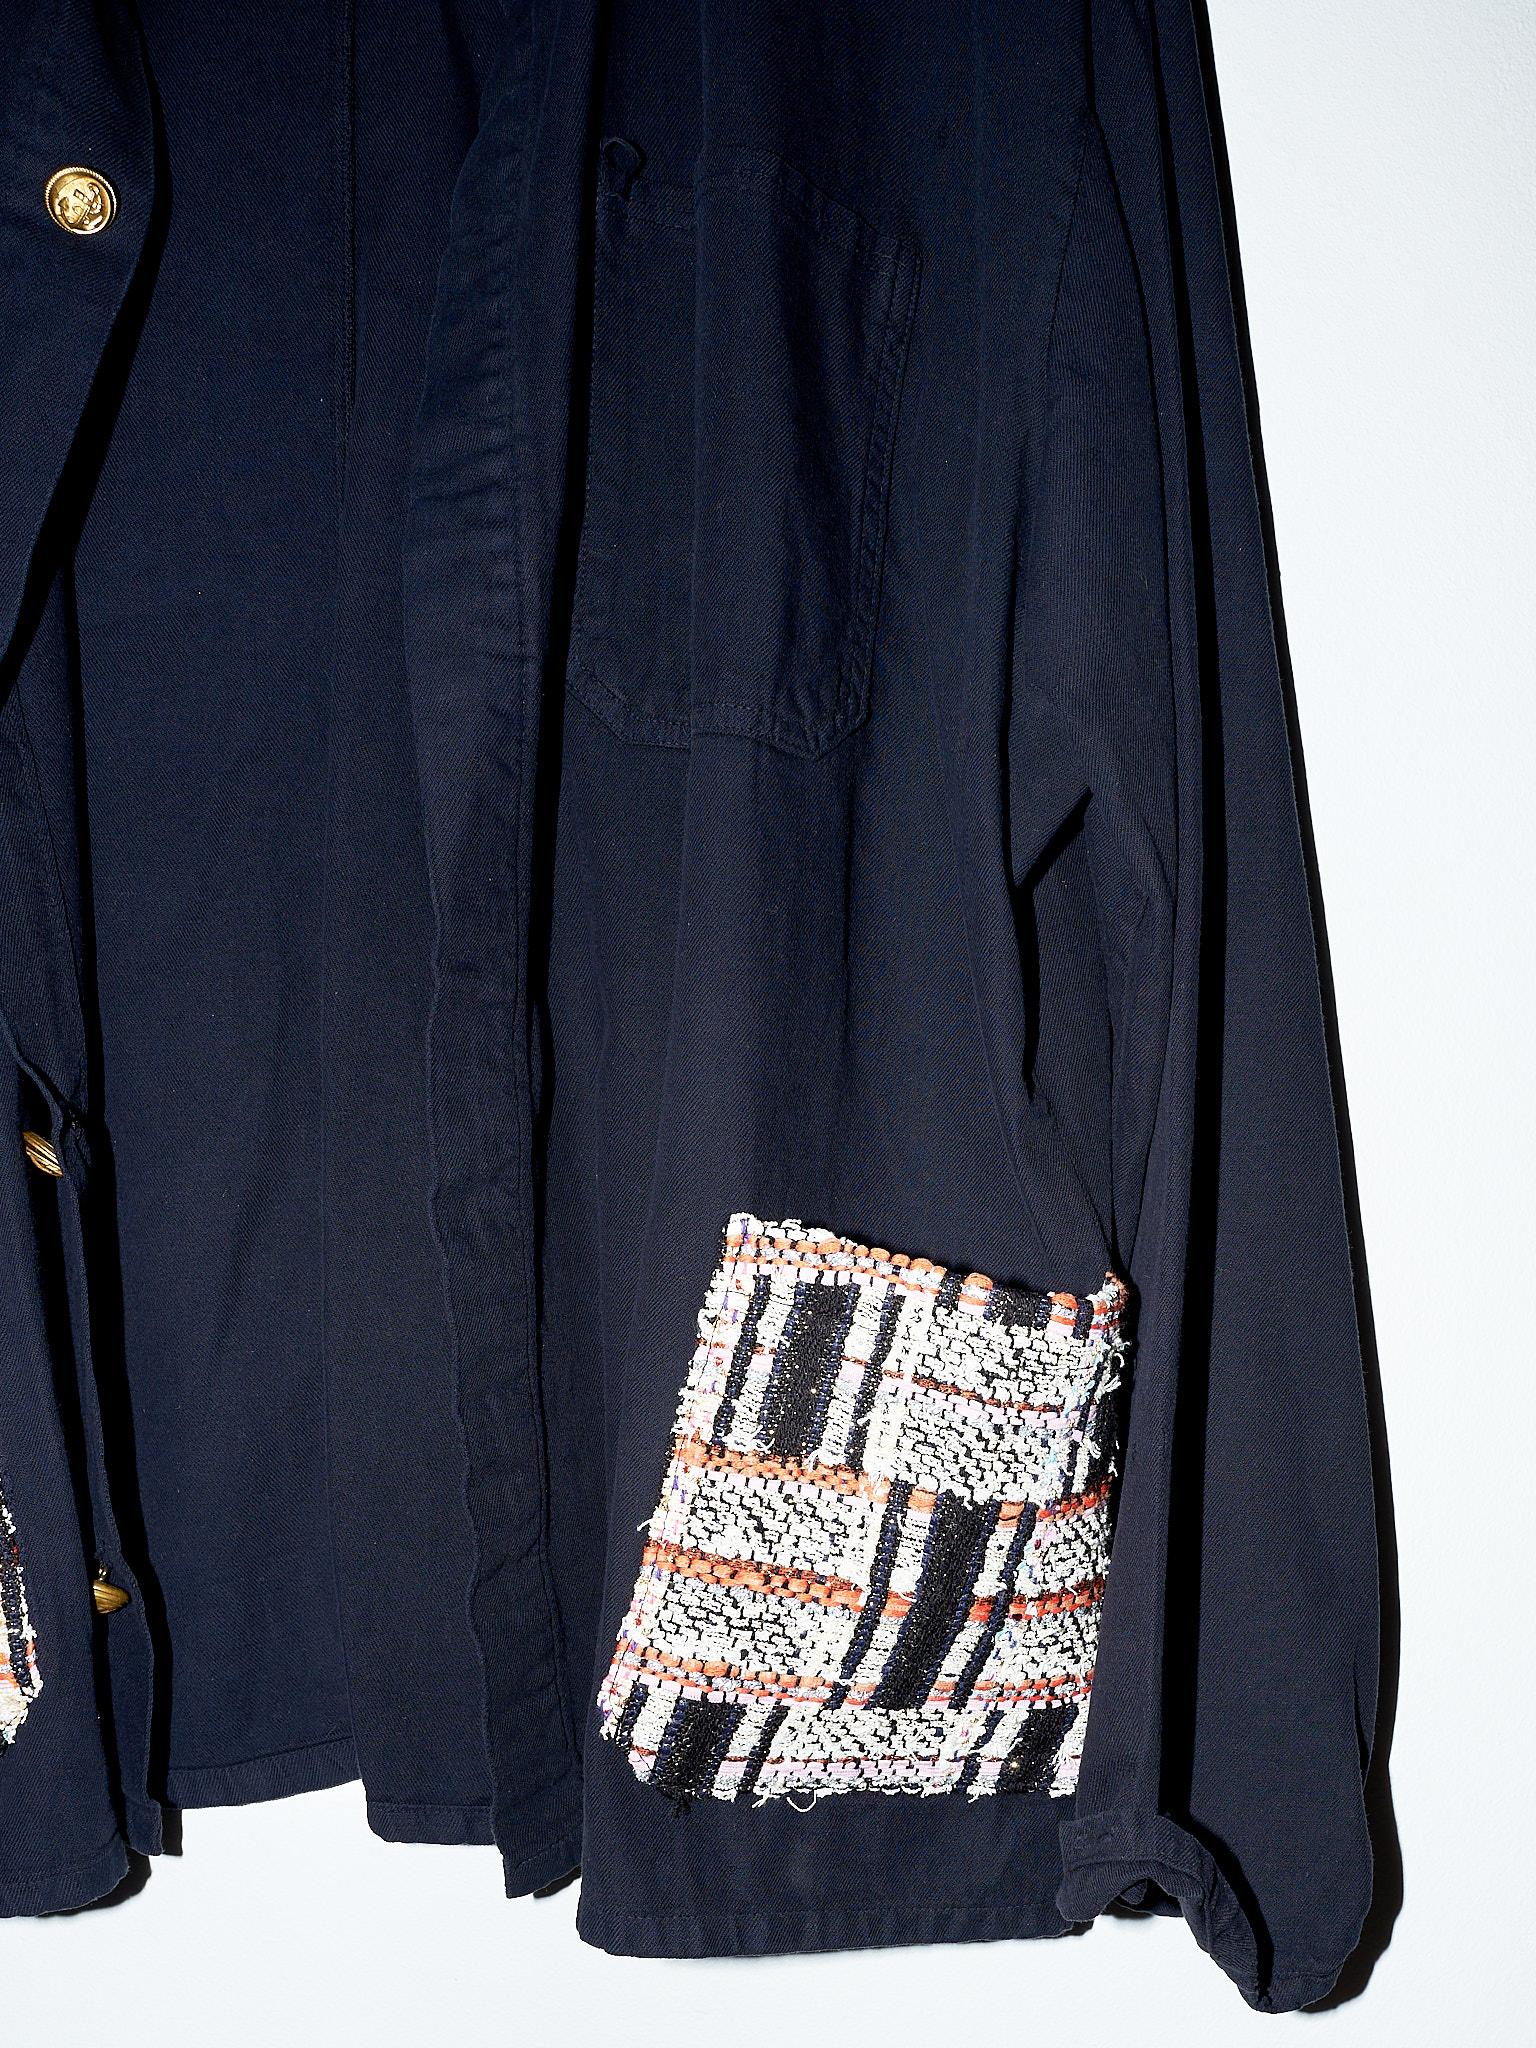 Women's Black Jacket Lurex Tweed Pockets Large Cotton J Dauphin